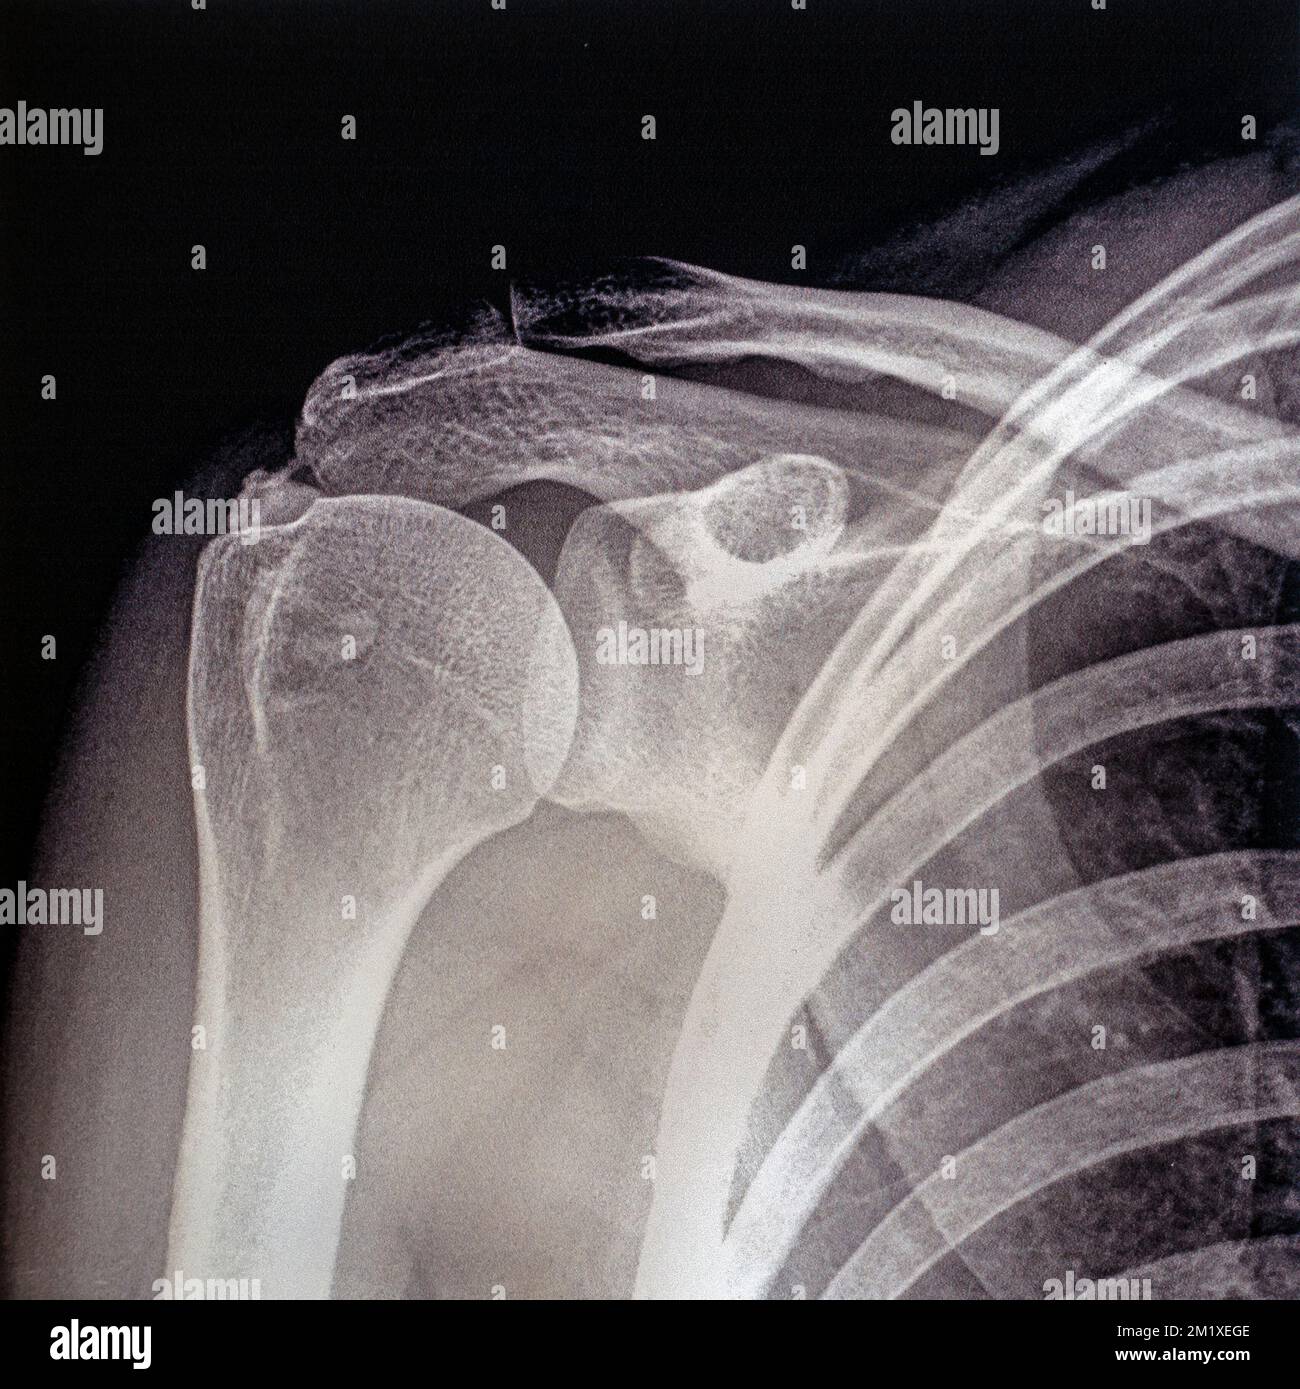 Photographie / radiographie ancienne du milieu du 20th siècle montrant tendinite / tendinopathie de l'épaule, inflammation des tendons Banque D'Images